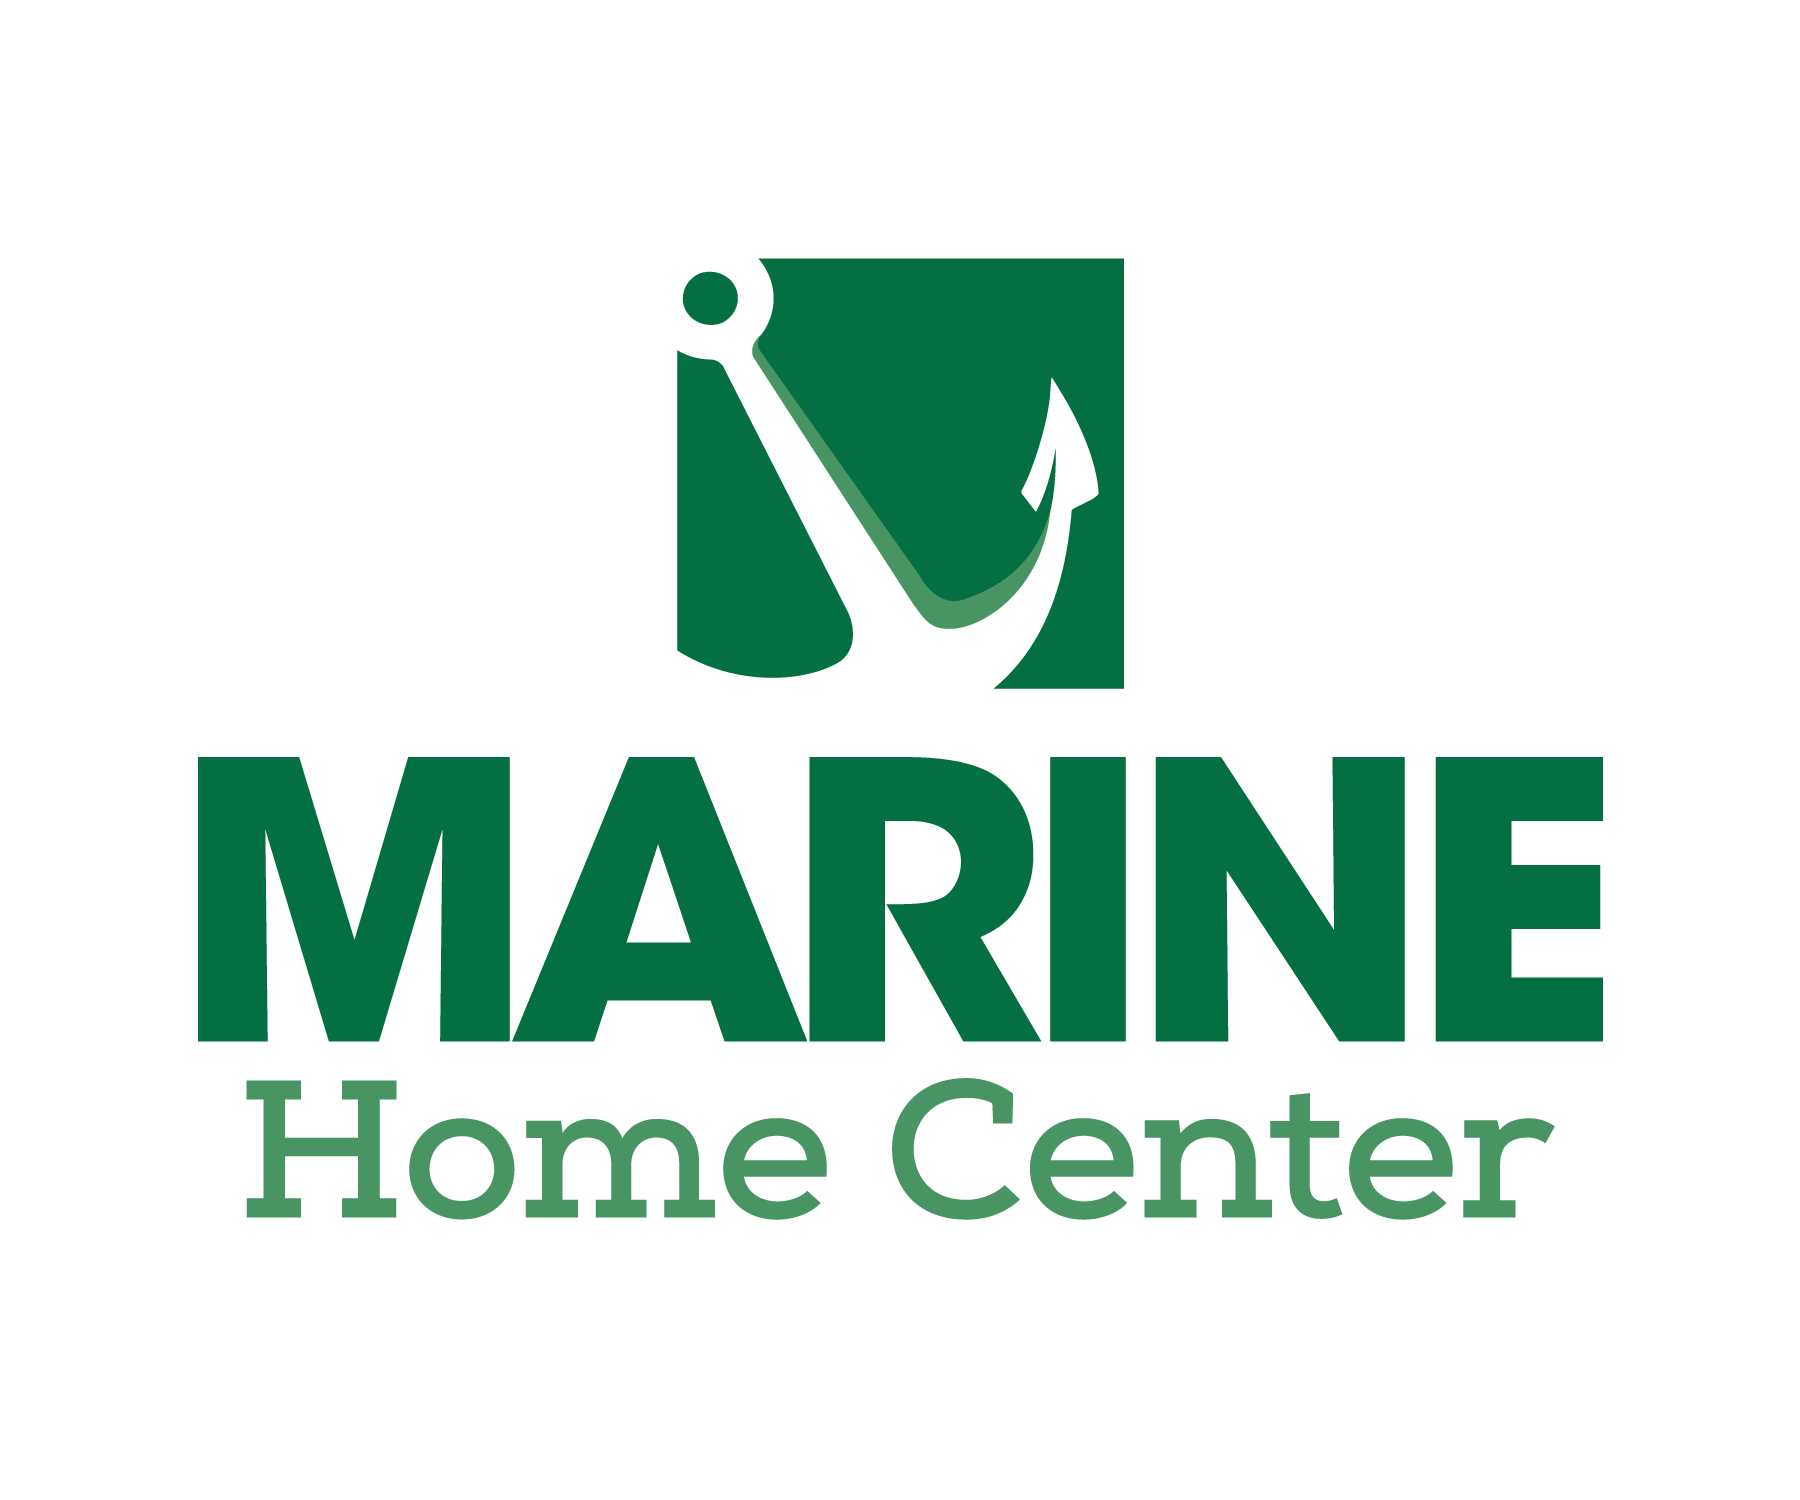 Marine Home Center